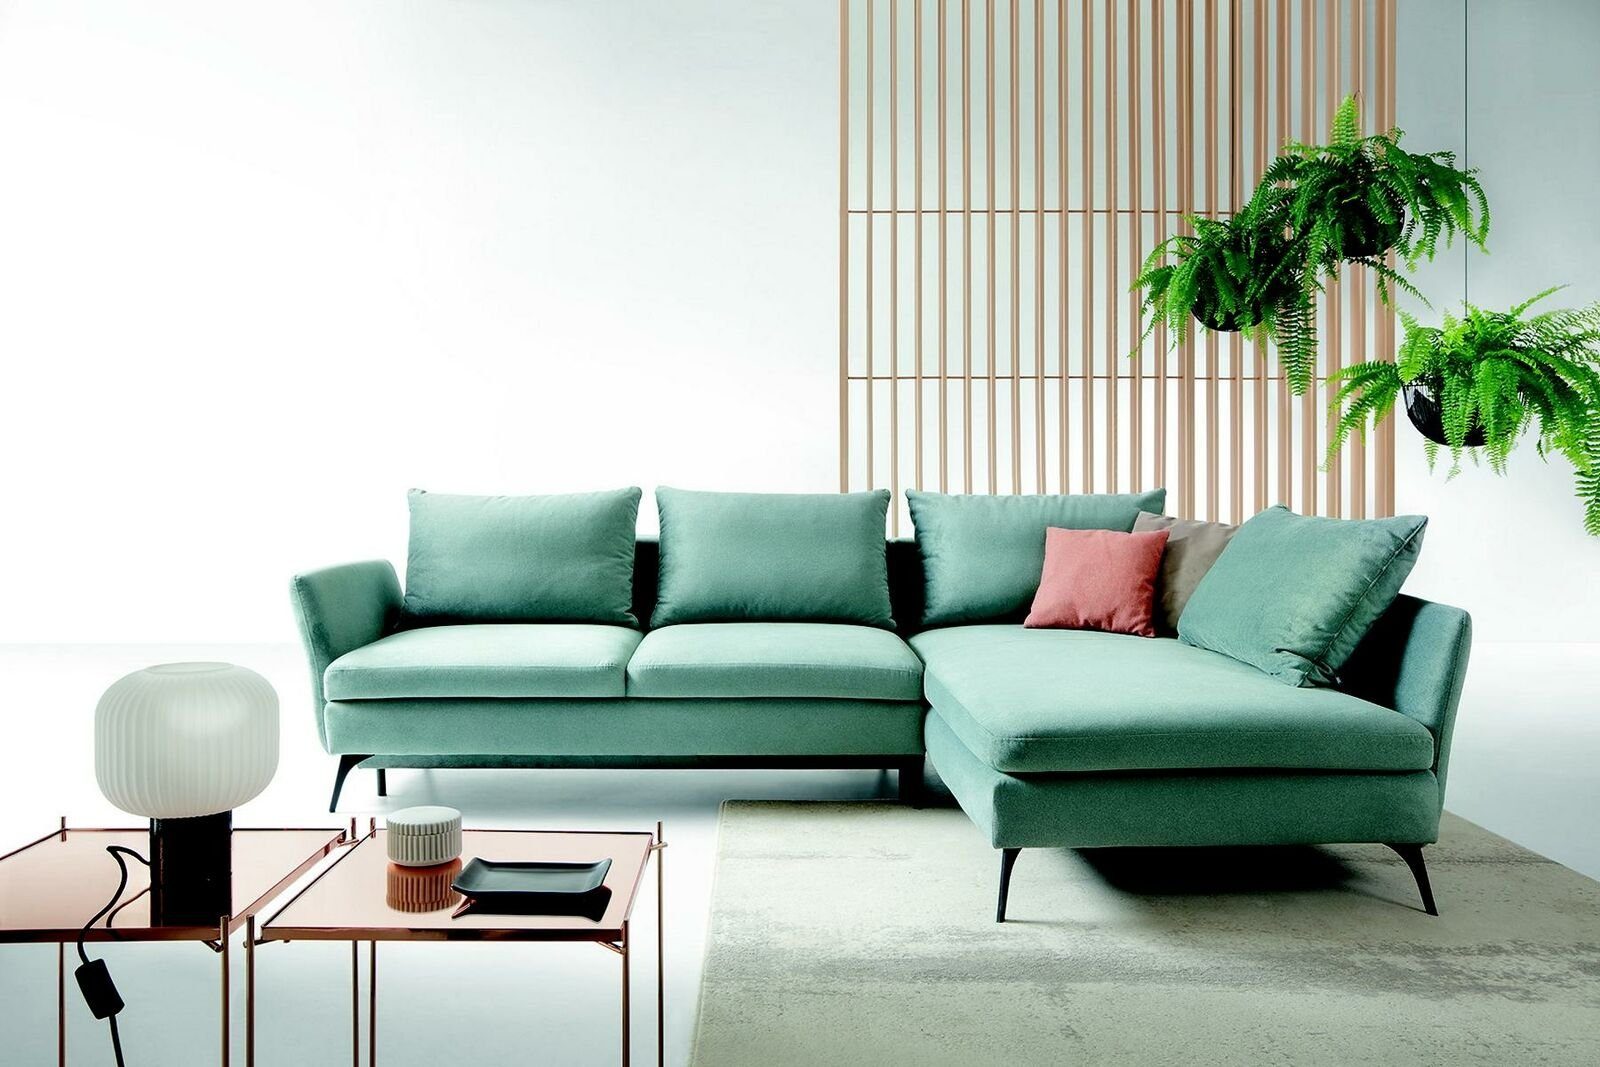 JVmoebel Ecksofa, L Wohnzimmer Couch Sofas Möbel Textil Form Ecksofa Grün